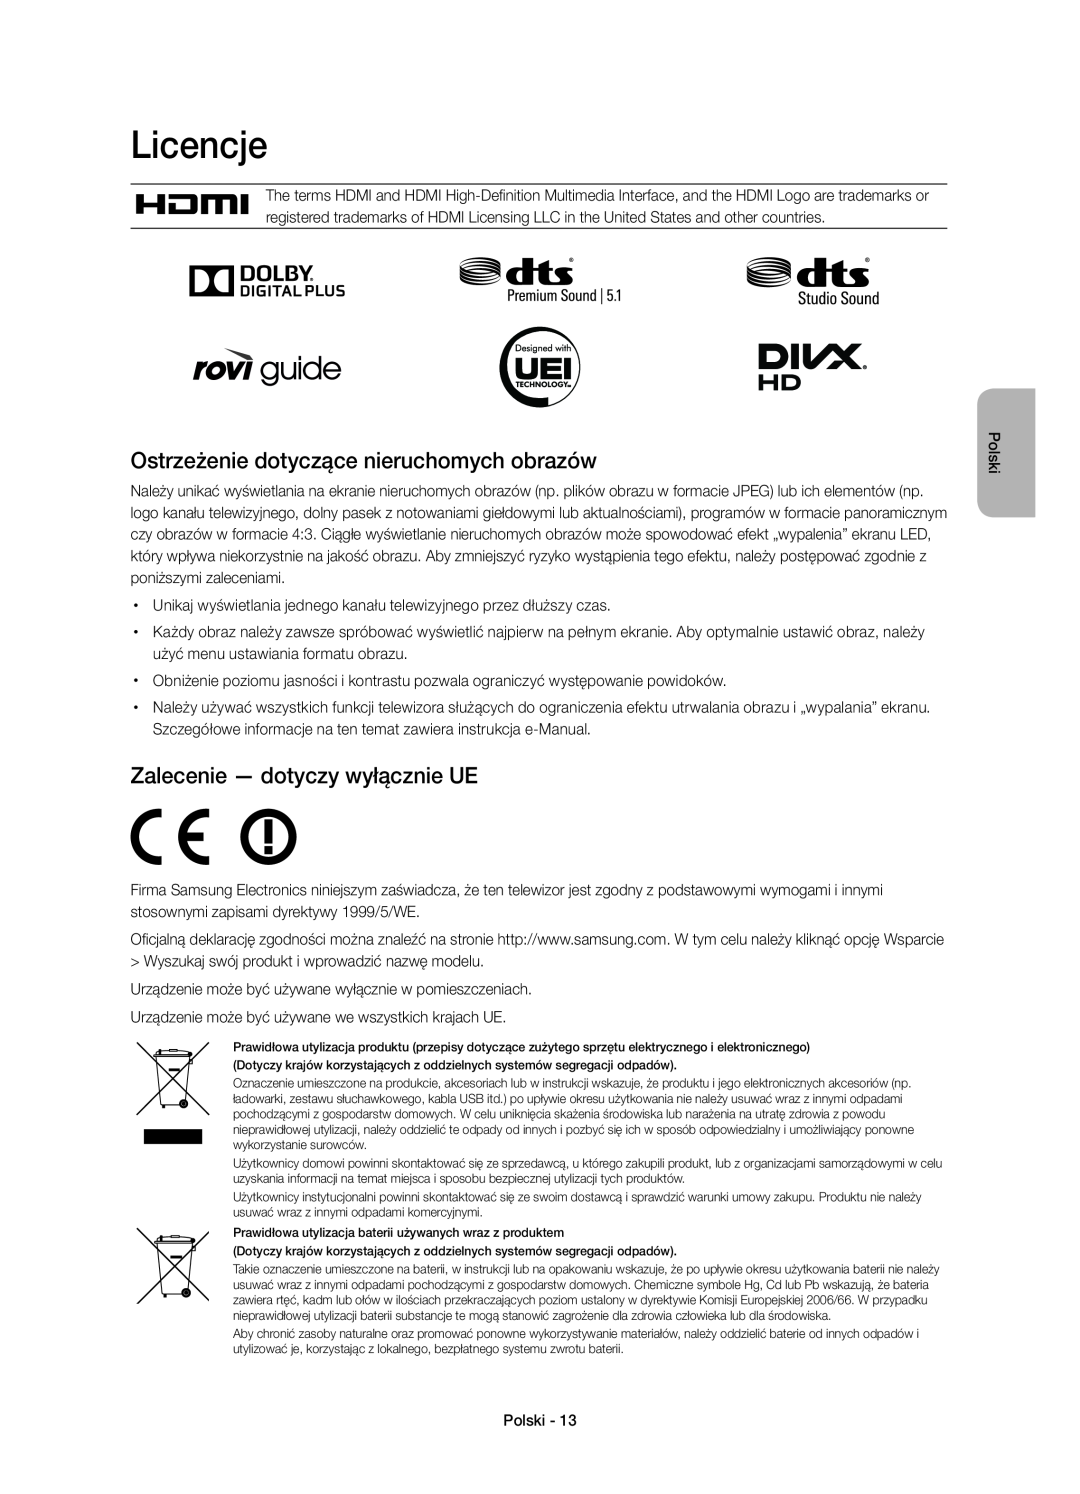 Samsung UE40H6700STXXH Licencje, Ostrzeżenie dotyczące nieruchomych obrazów, Zalecenie - dotyczy wyłącznie UE, Polski 